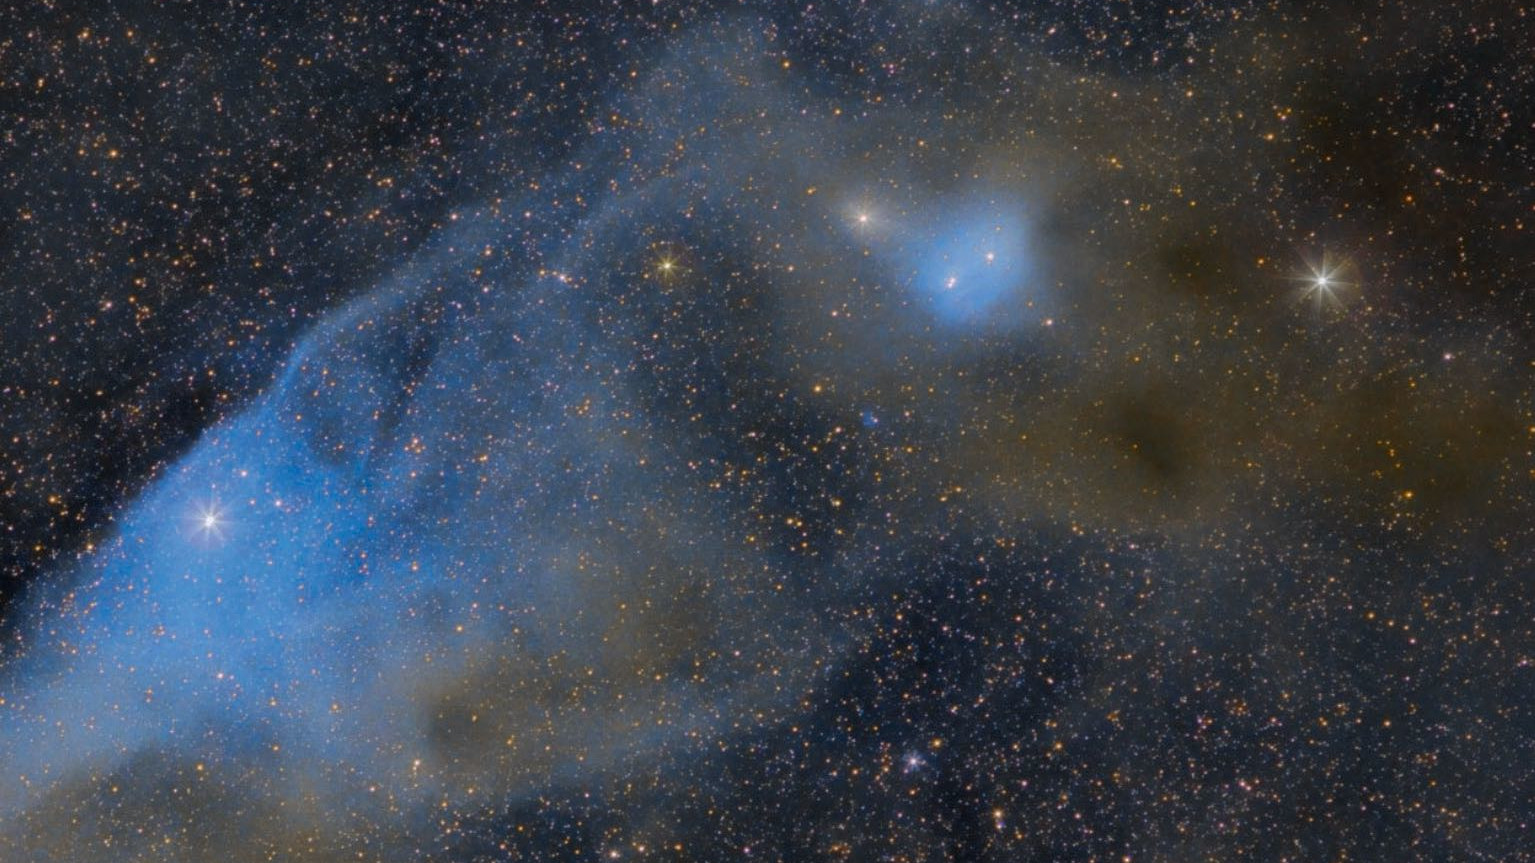 A “Blue Horsehead Nebula” IC 4592 em Escorpião (a norte, está abaixo). ν Scorpii está localizado na ponte do nariz da cabeça e confere a coloração azulada. A nebulosa IC 4601, também azulada, pode ser vista por baixo das "orelhas". Scott Rosen